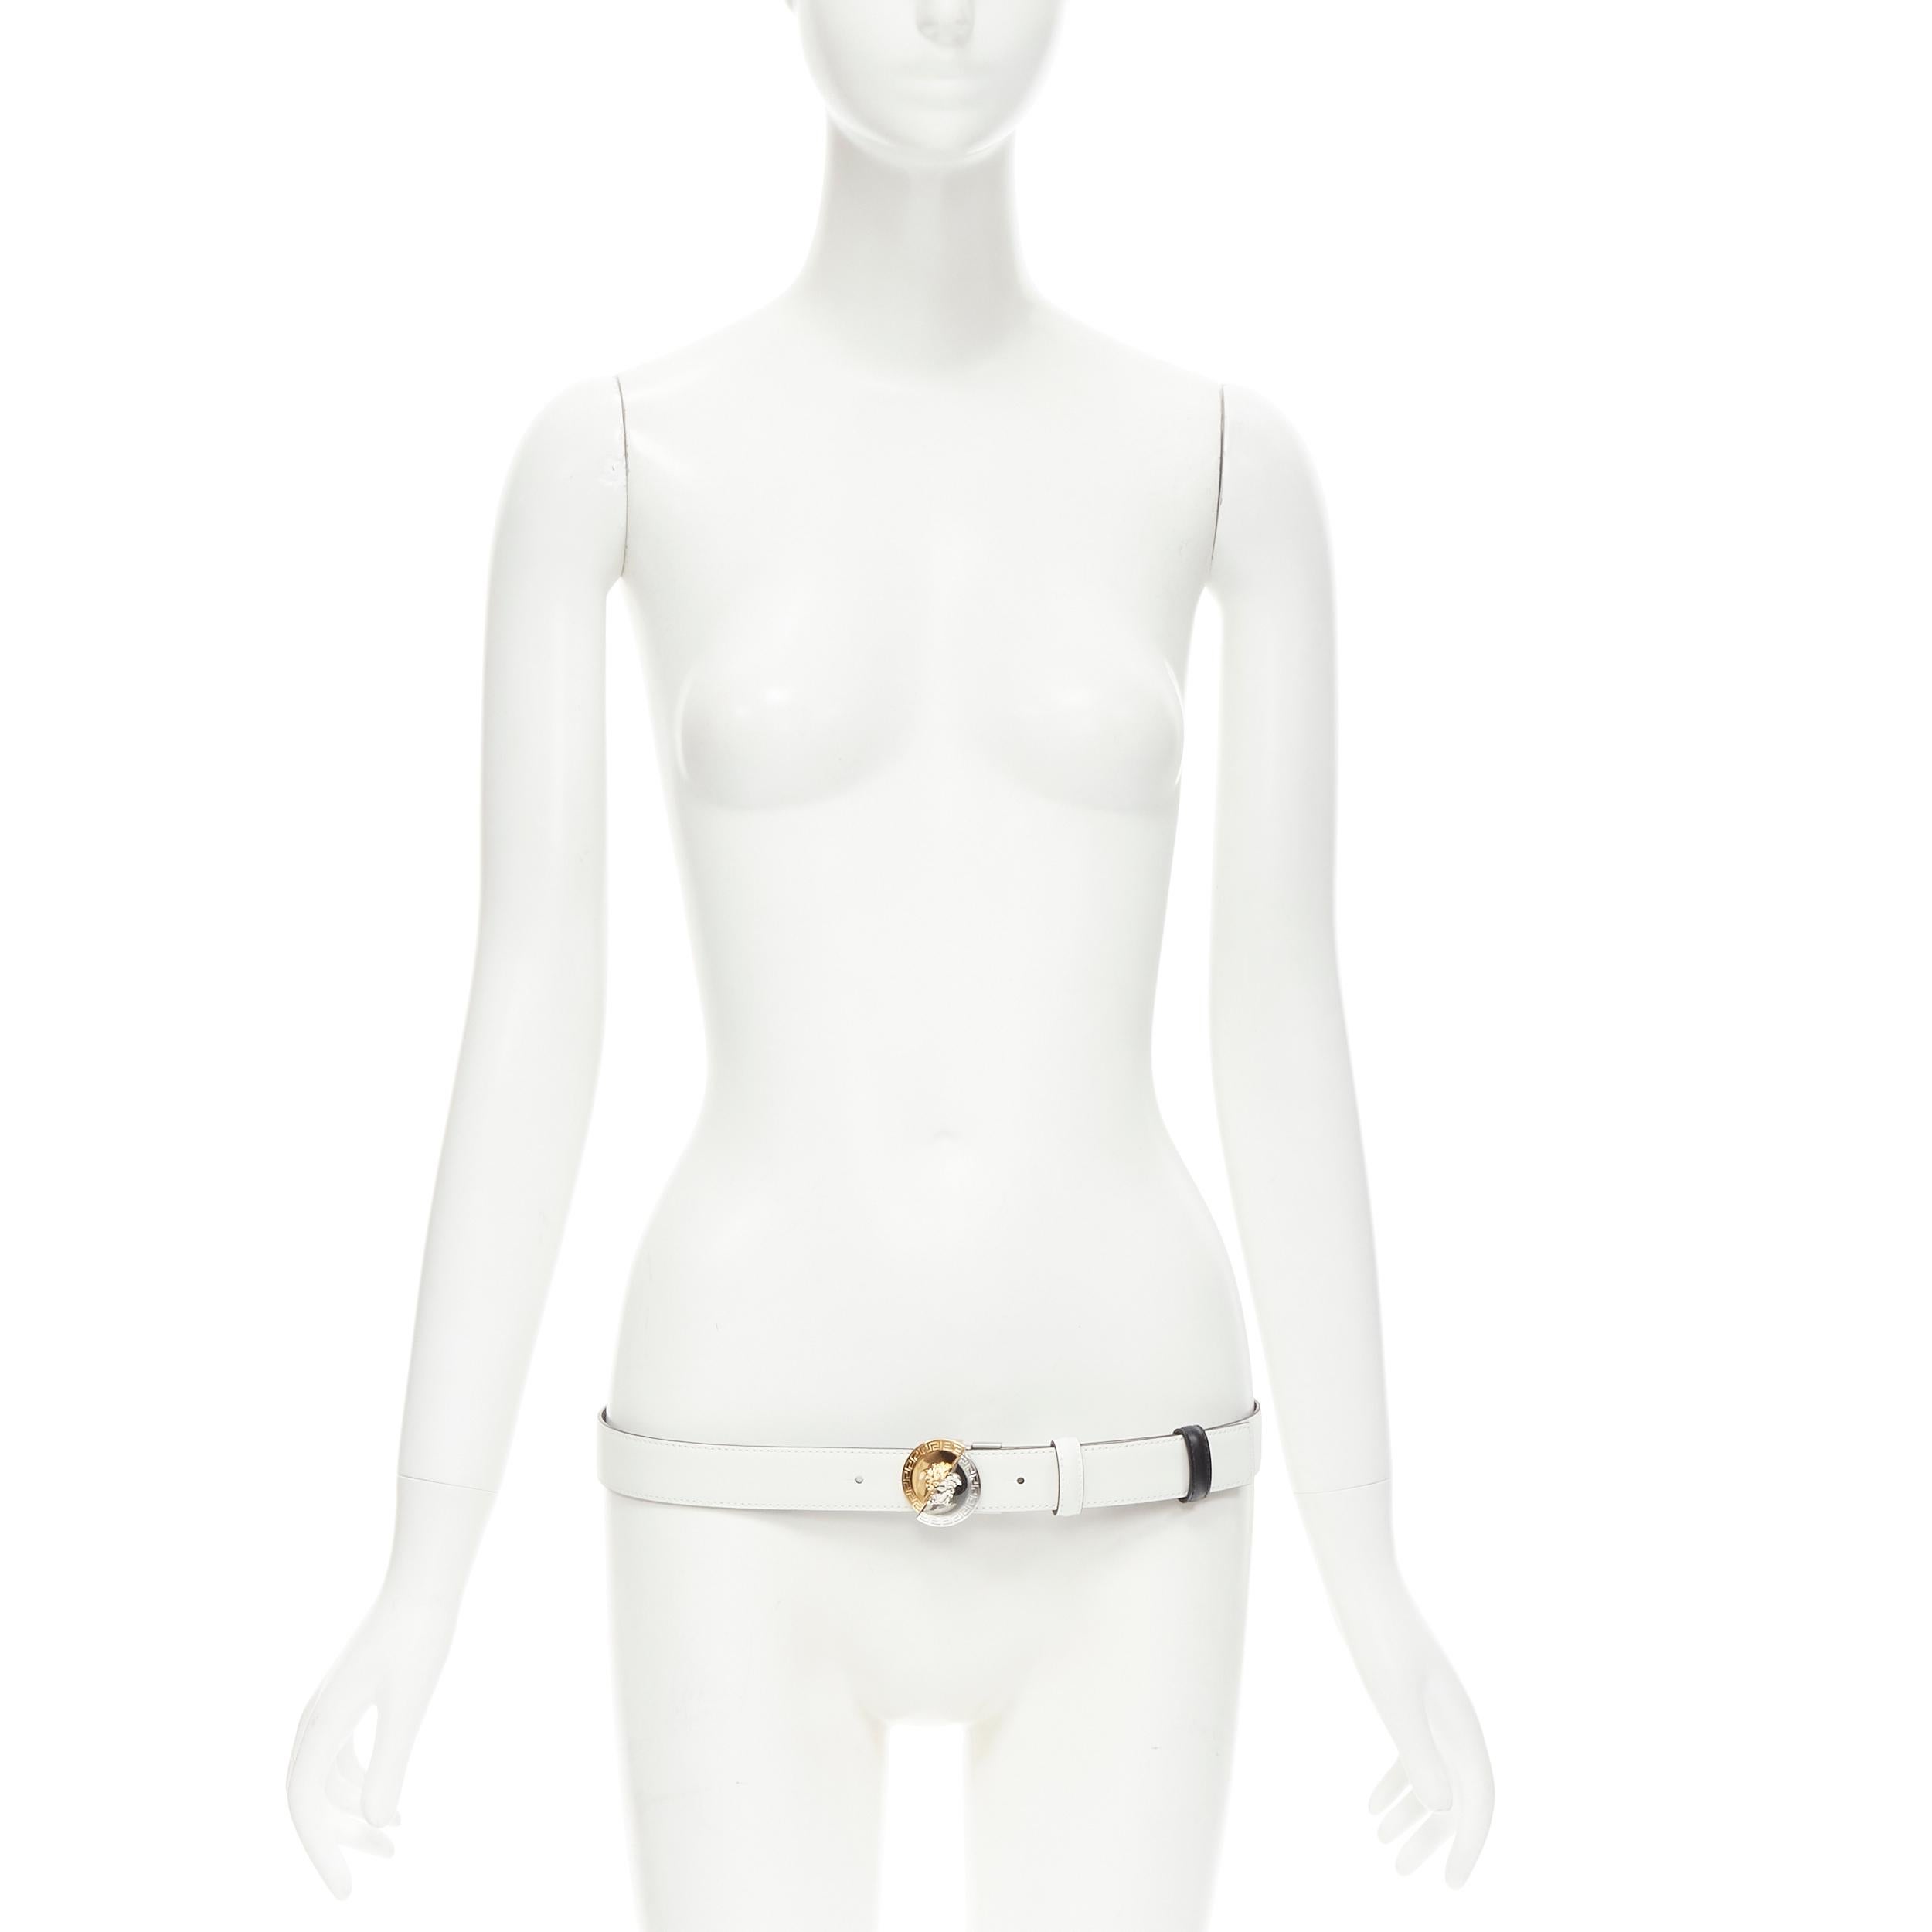 Beige Versace, ceinture réversible Demi Medusa en métal mélangé noir et blanc, neuve  105cm 40-44